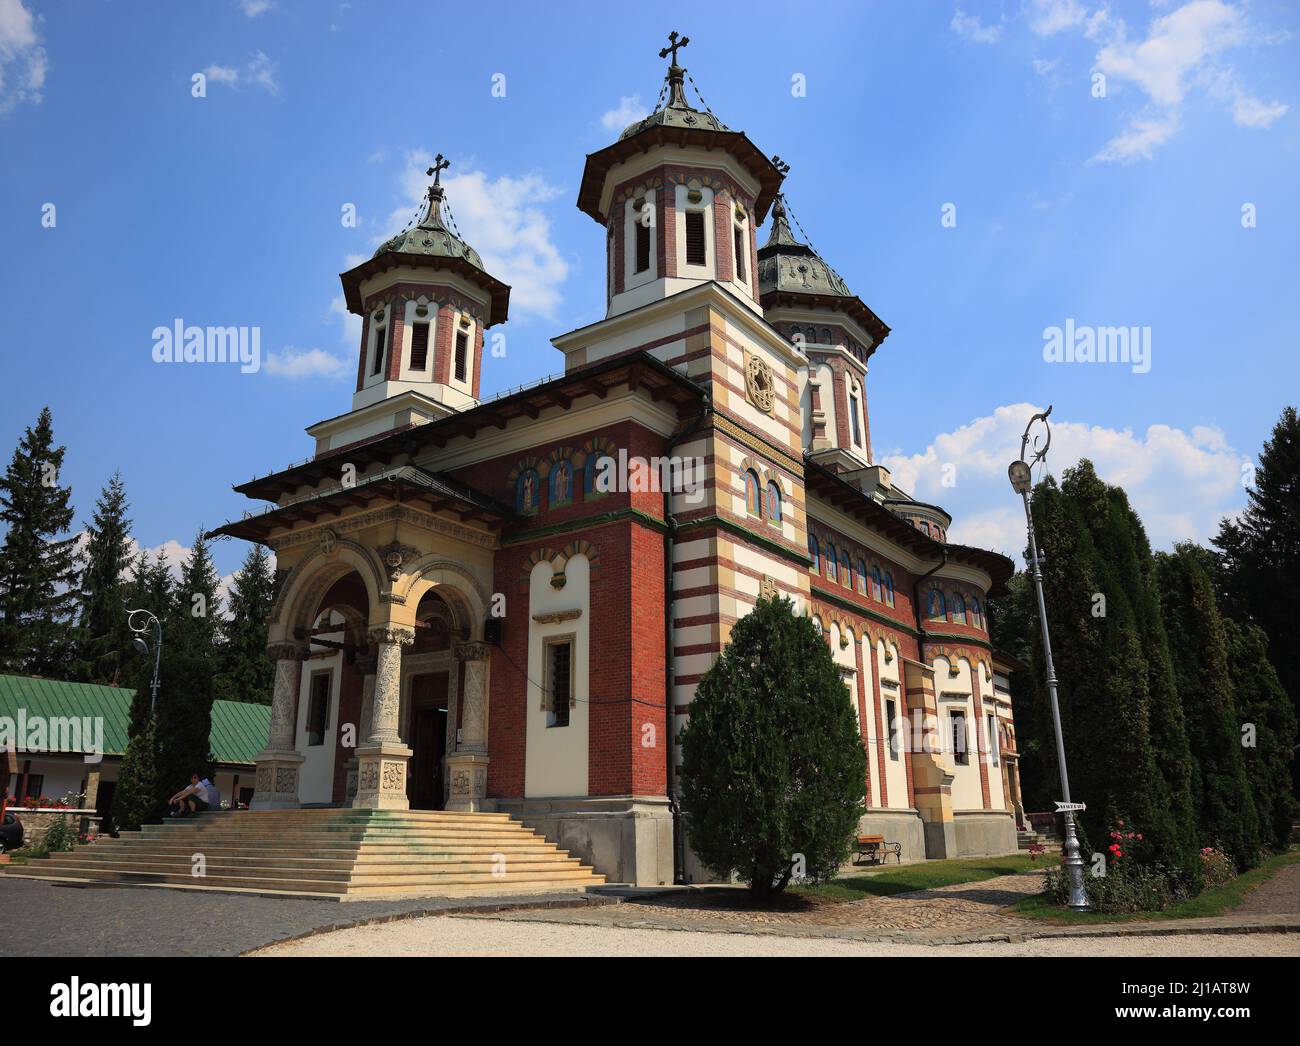 Kloster von Sinaia, Große Walachei, Rumänien  /  Monastery of Sinaia, Great Wallachia, Romania (Aufnahmedatum kann abweichen) Stock Photo